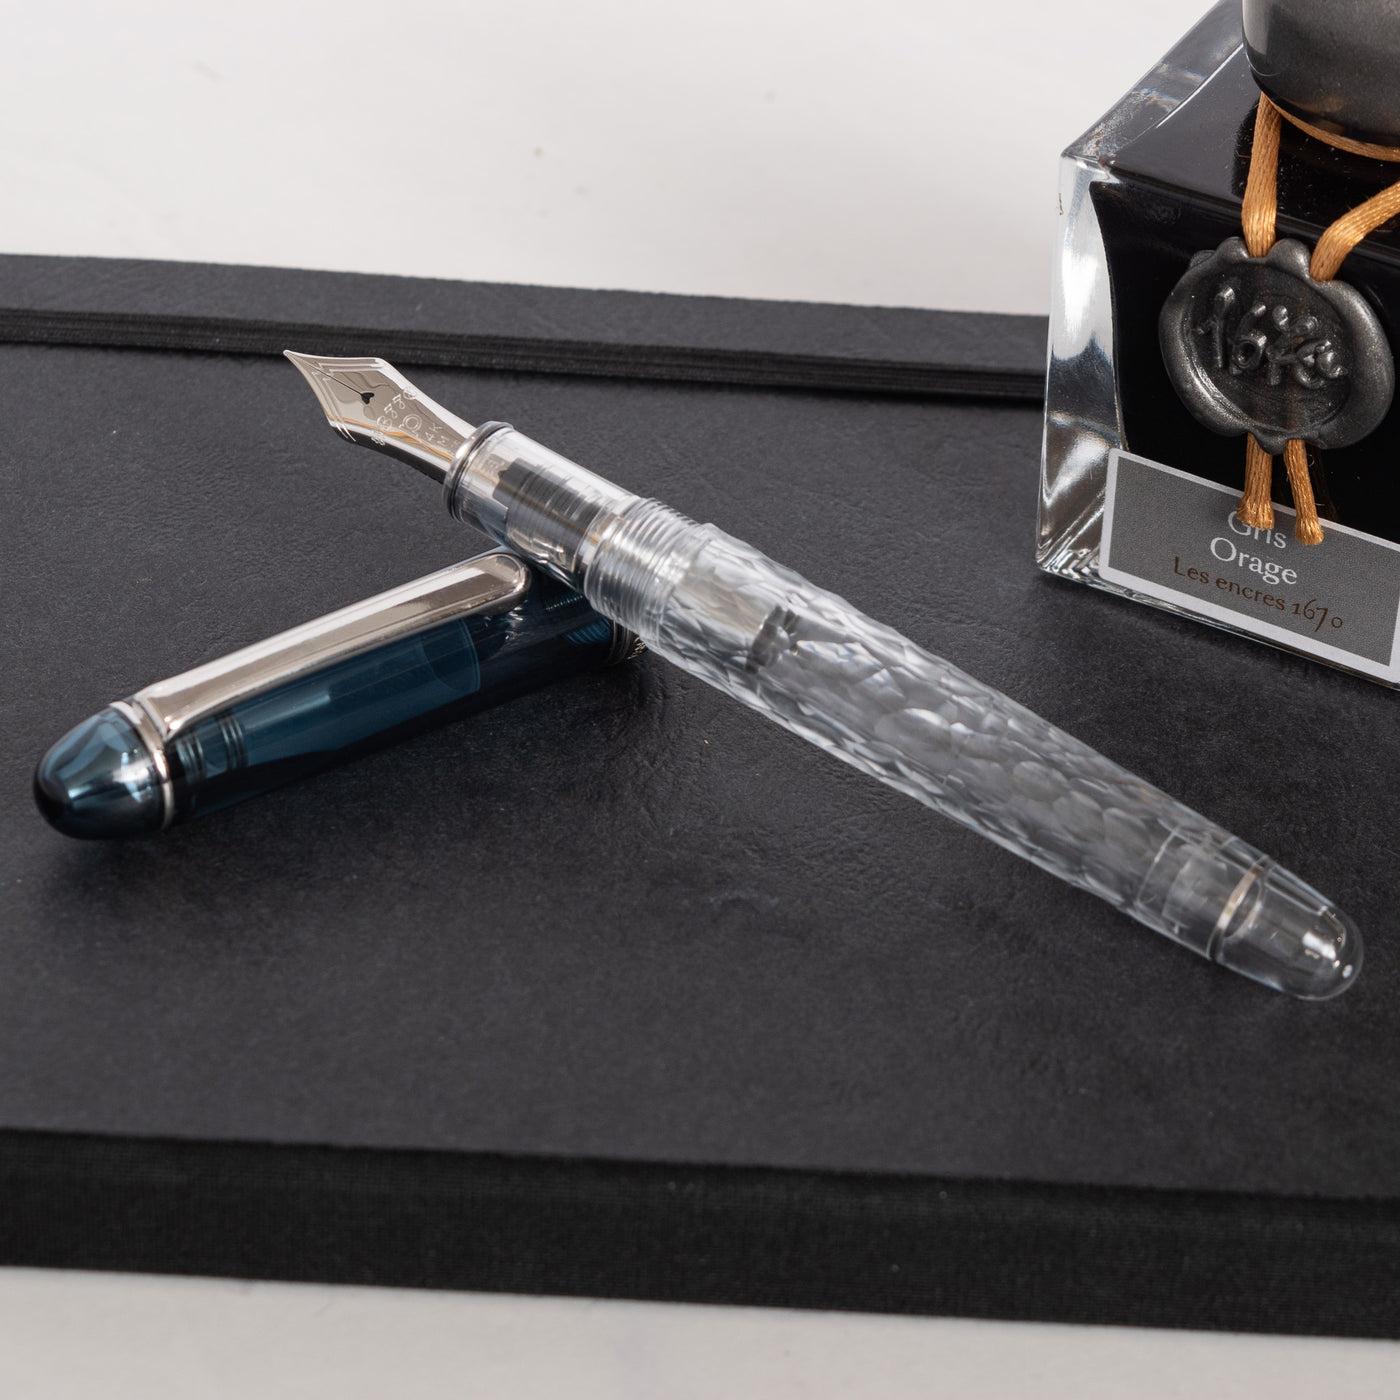 Platinum 3776 Century Limited Edition Uroko Gumo Fountain Pen